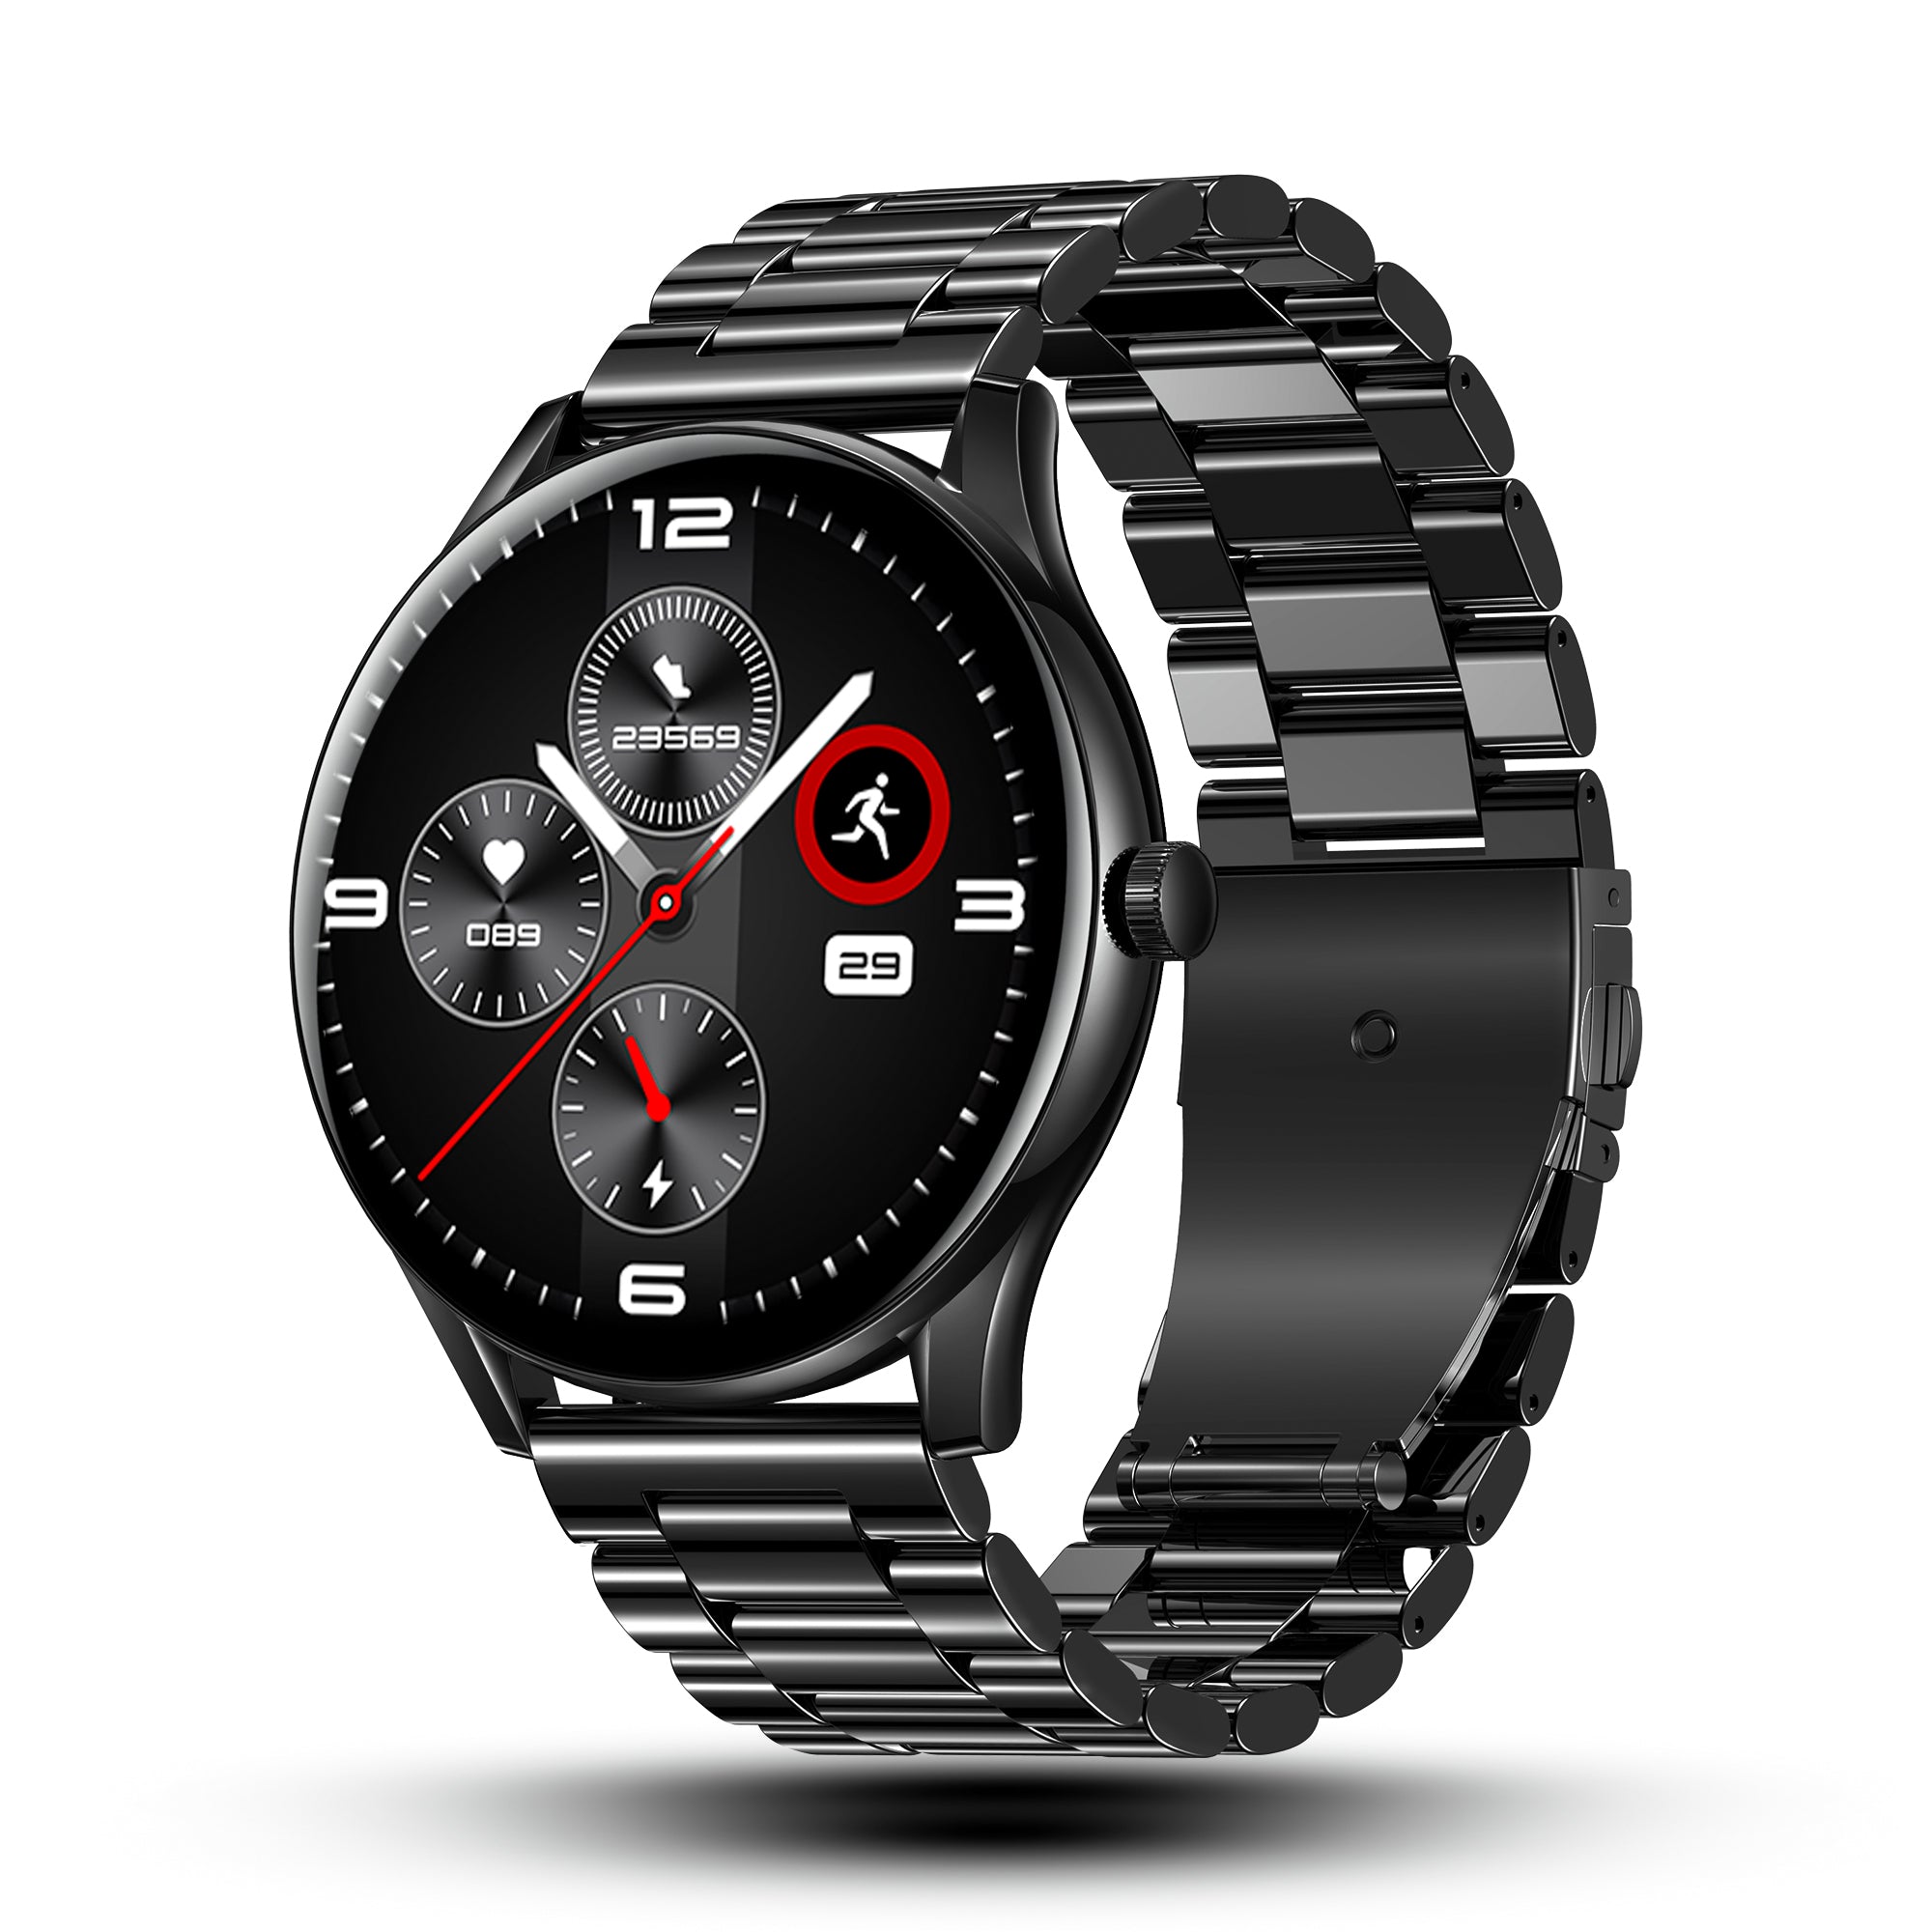 Best premium smartwatches in black: Worthy considerations under ₹10000 |  Mint